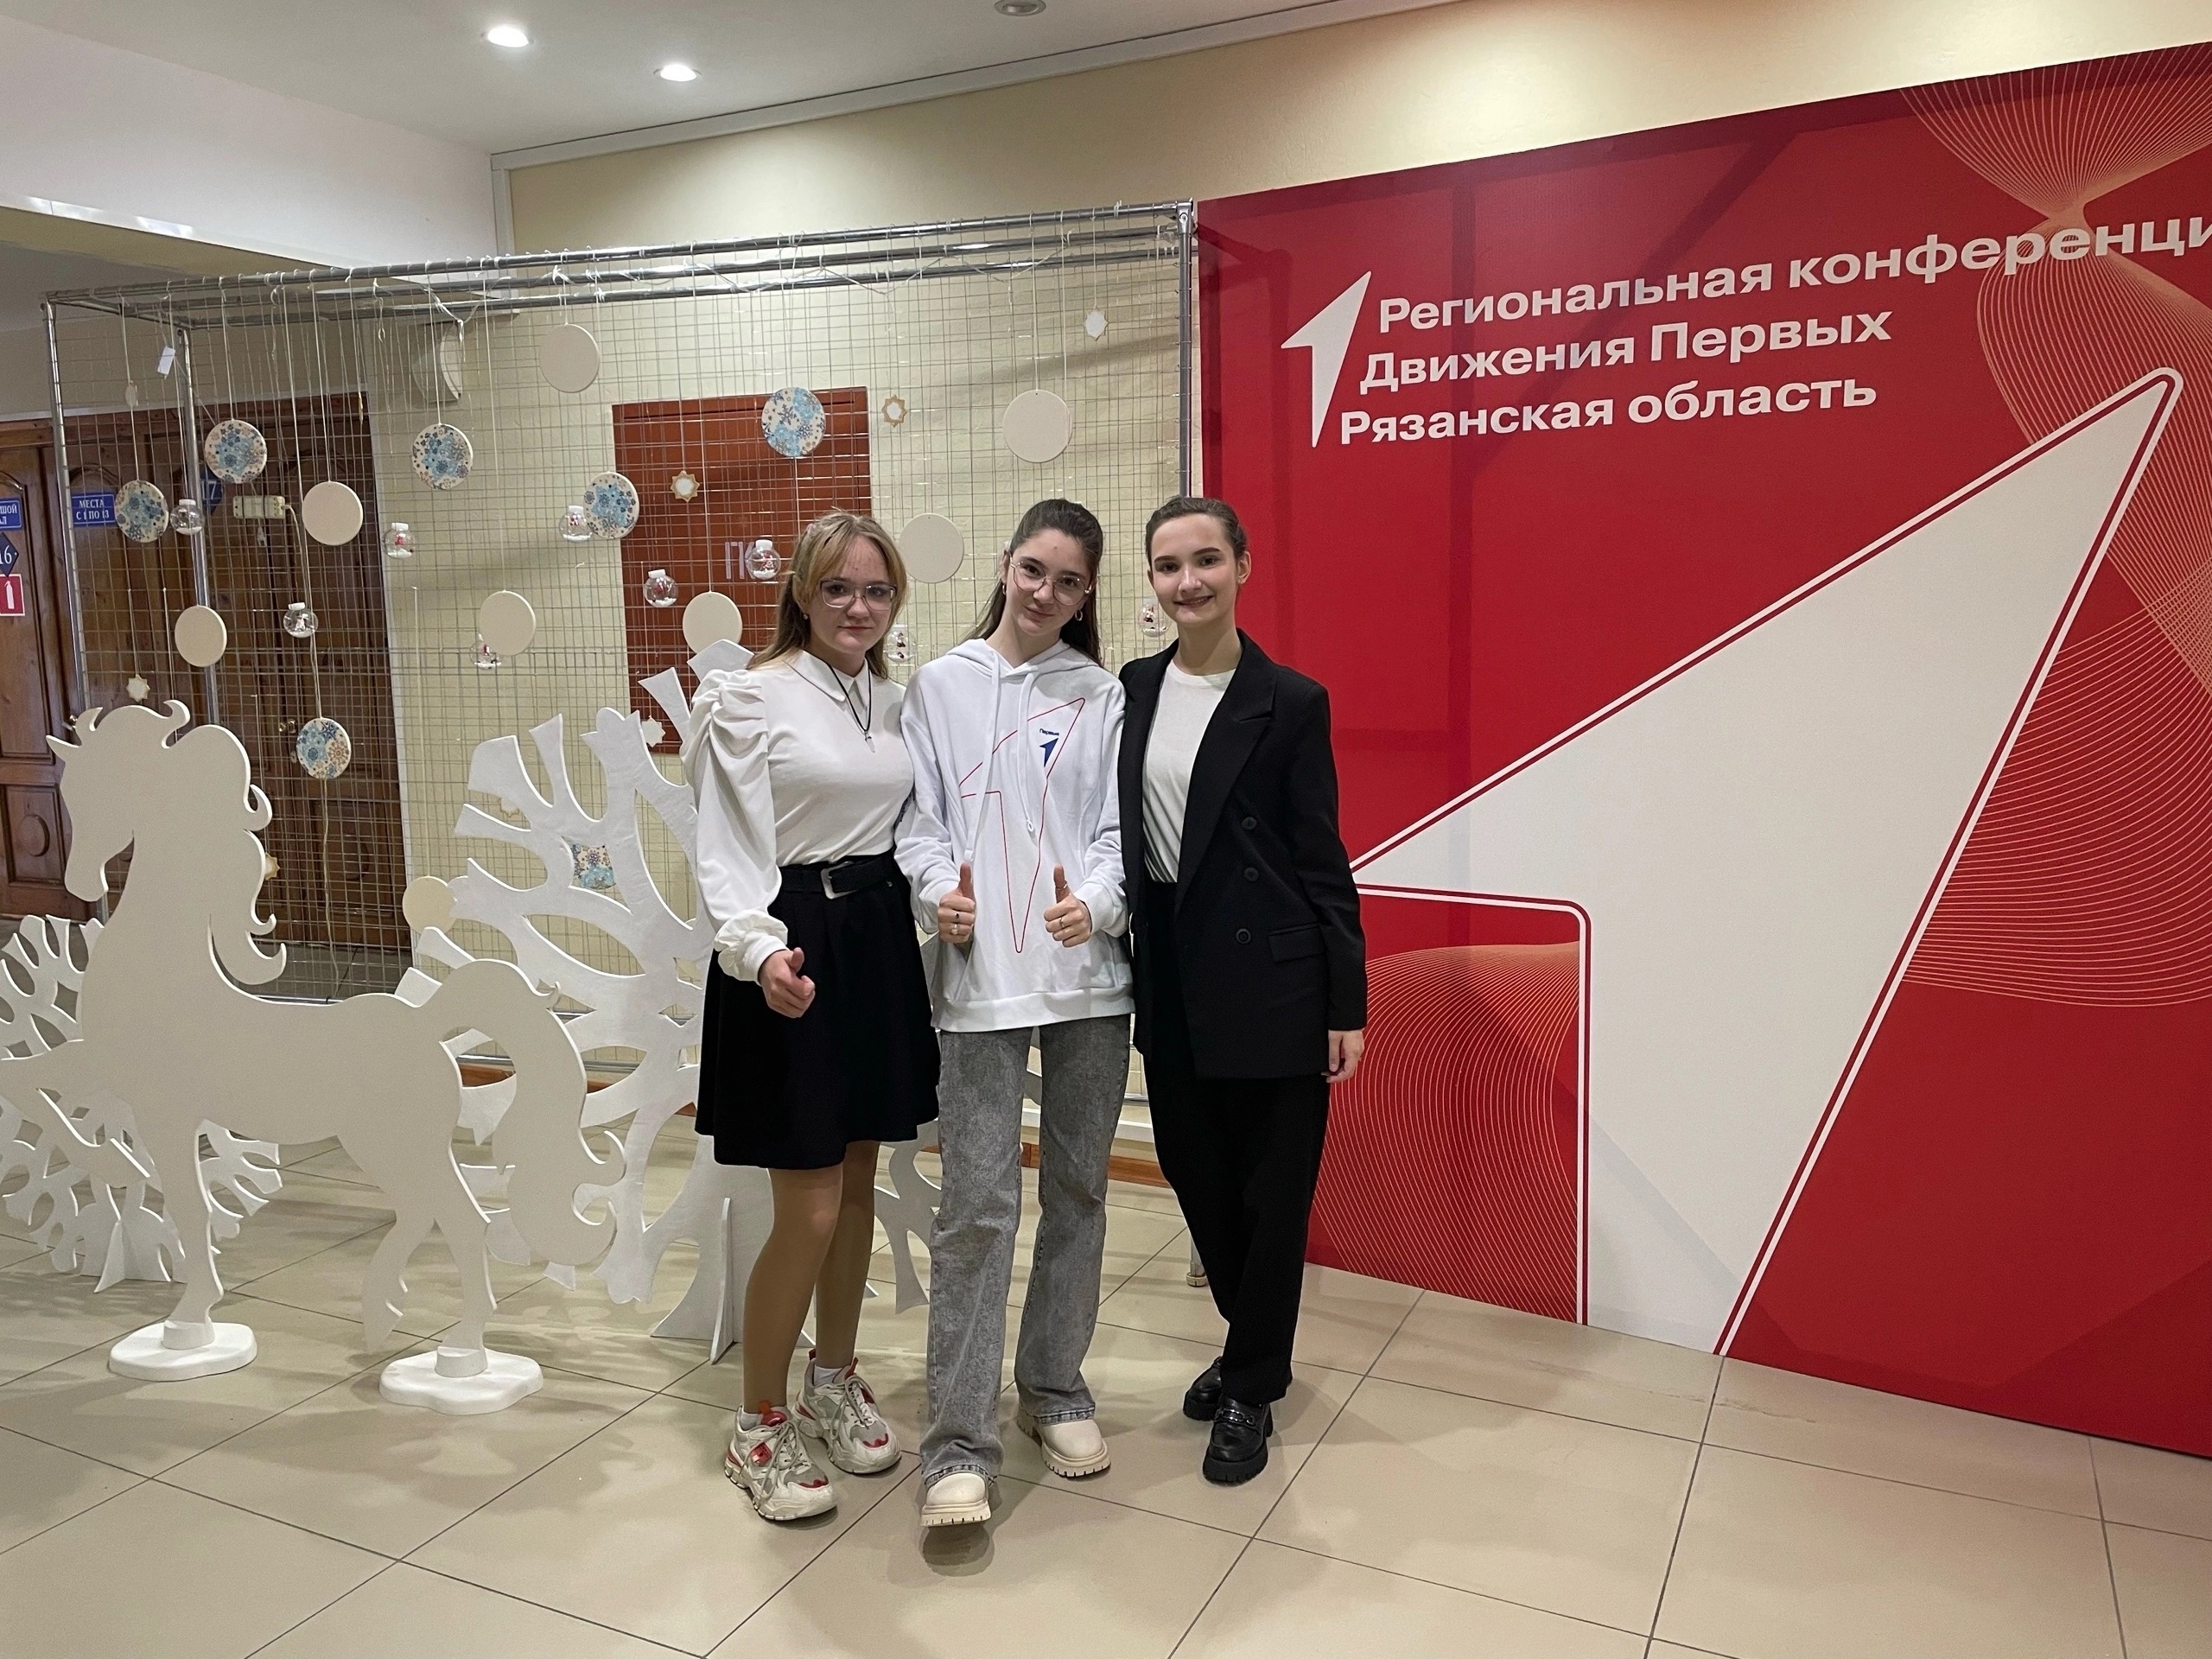 19 декабря ученица нашей школы Дарья Савельева приняла участие в Региональной конференции Движения Первых, которая проходила в Рязанском Дворце молодежи..